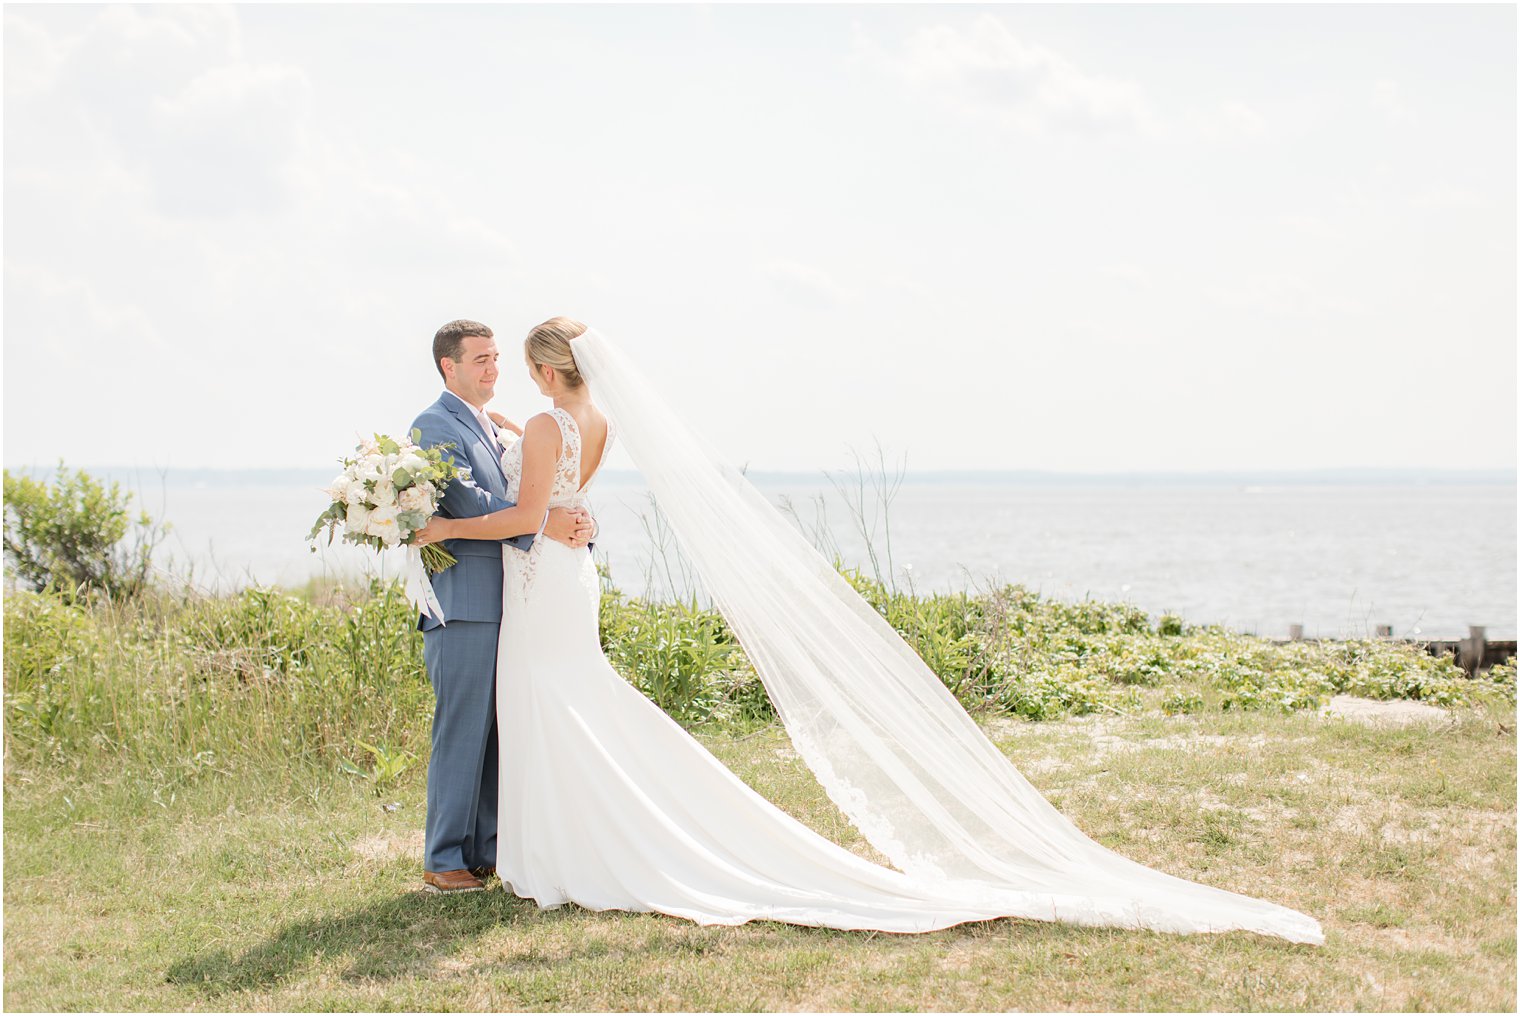 Idalia Photography photographs NJ wedding day on waterfront